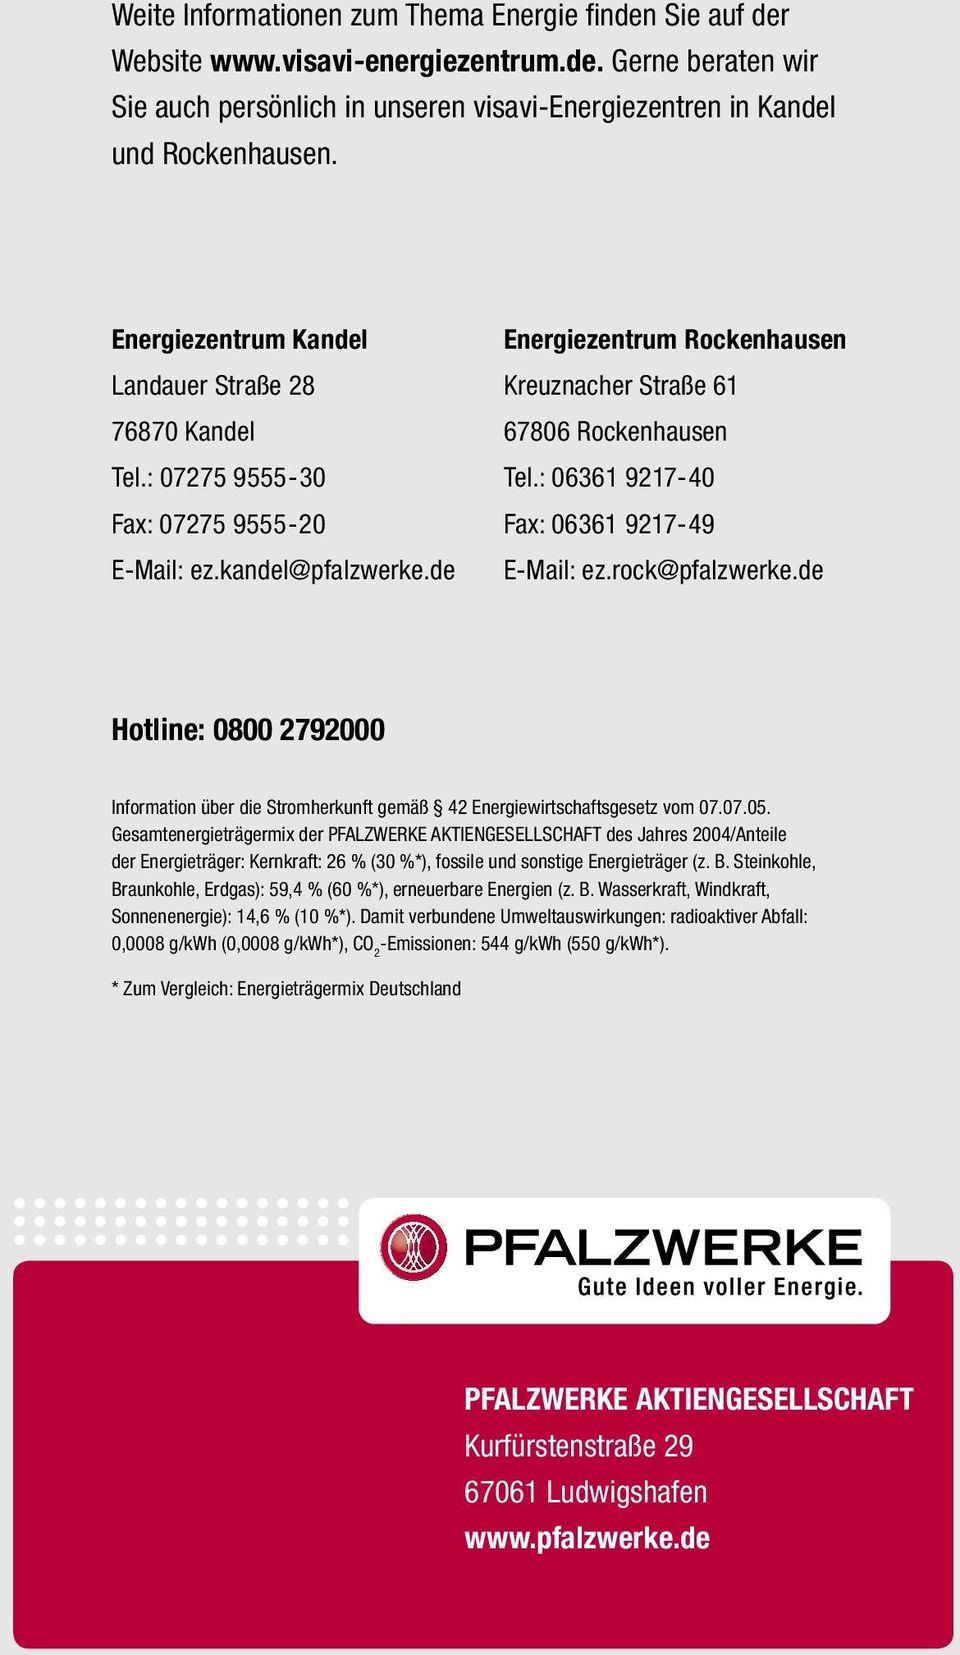 : 06361 9217-40 Fax: 06361 9217-49 E-Mail: ez.rock@pfalzwerke.de Hotline: 0800 2792000 Information über die Stromherkunft gemäß 42 Energiewirtschaftsgesetz vom 07.07.05.